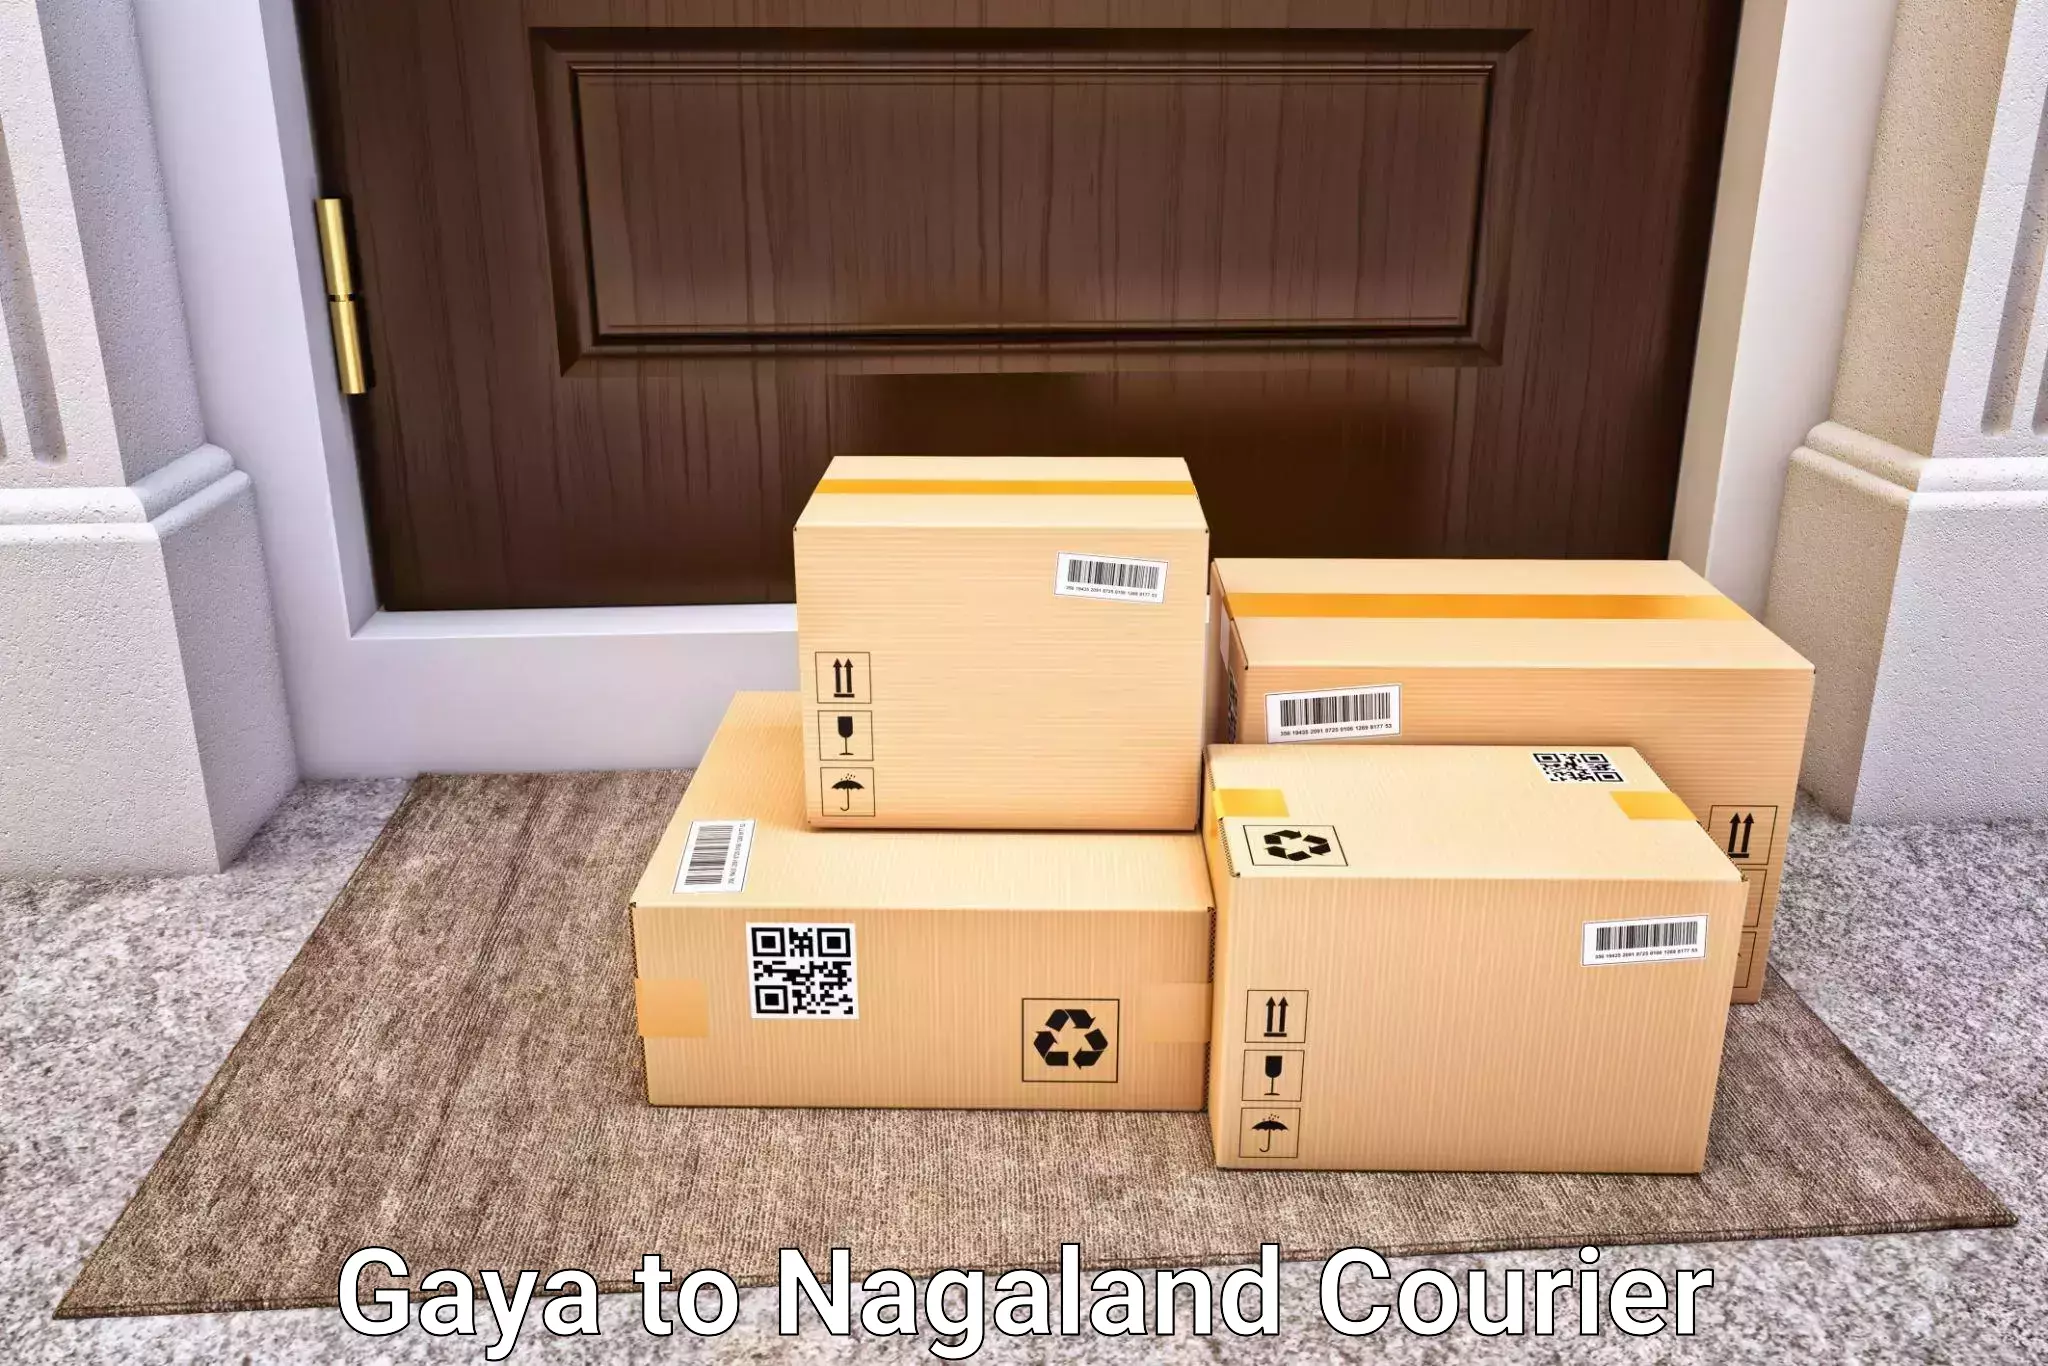 Baggage transport calculator Gaya to Nagaland